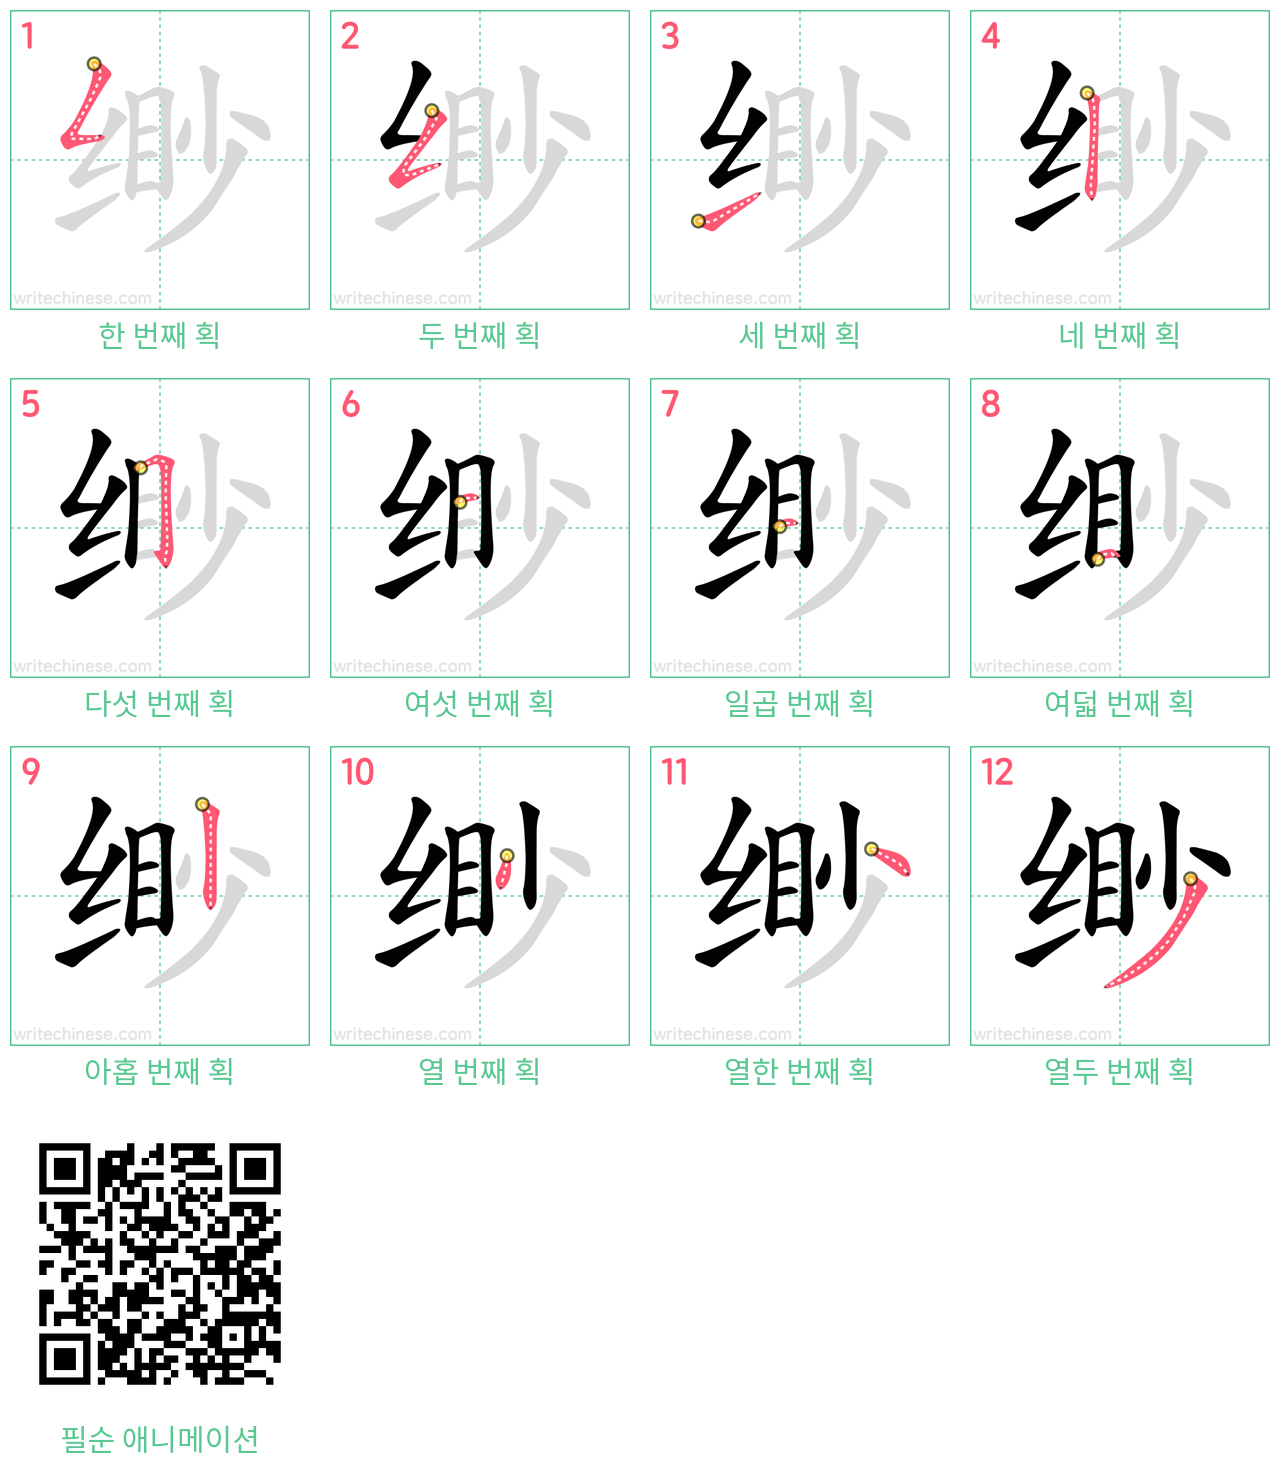 缈 step-by-step stroke order diagrams